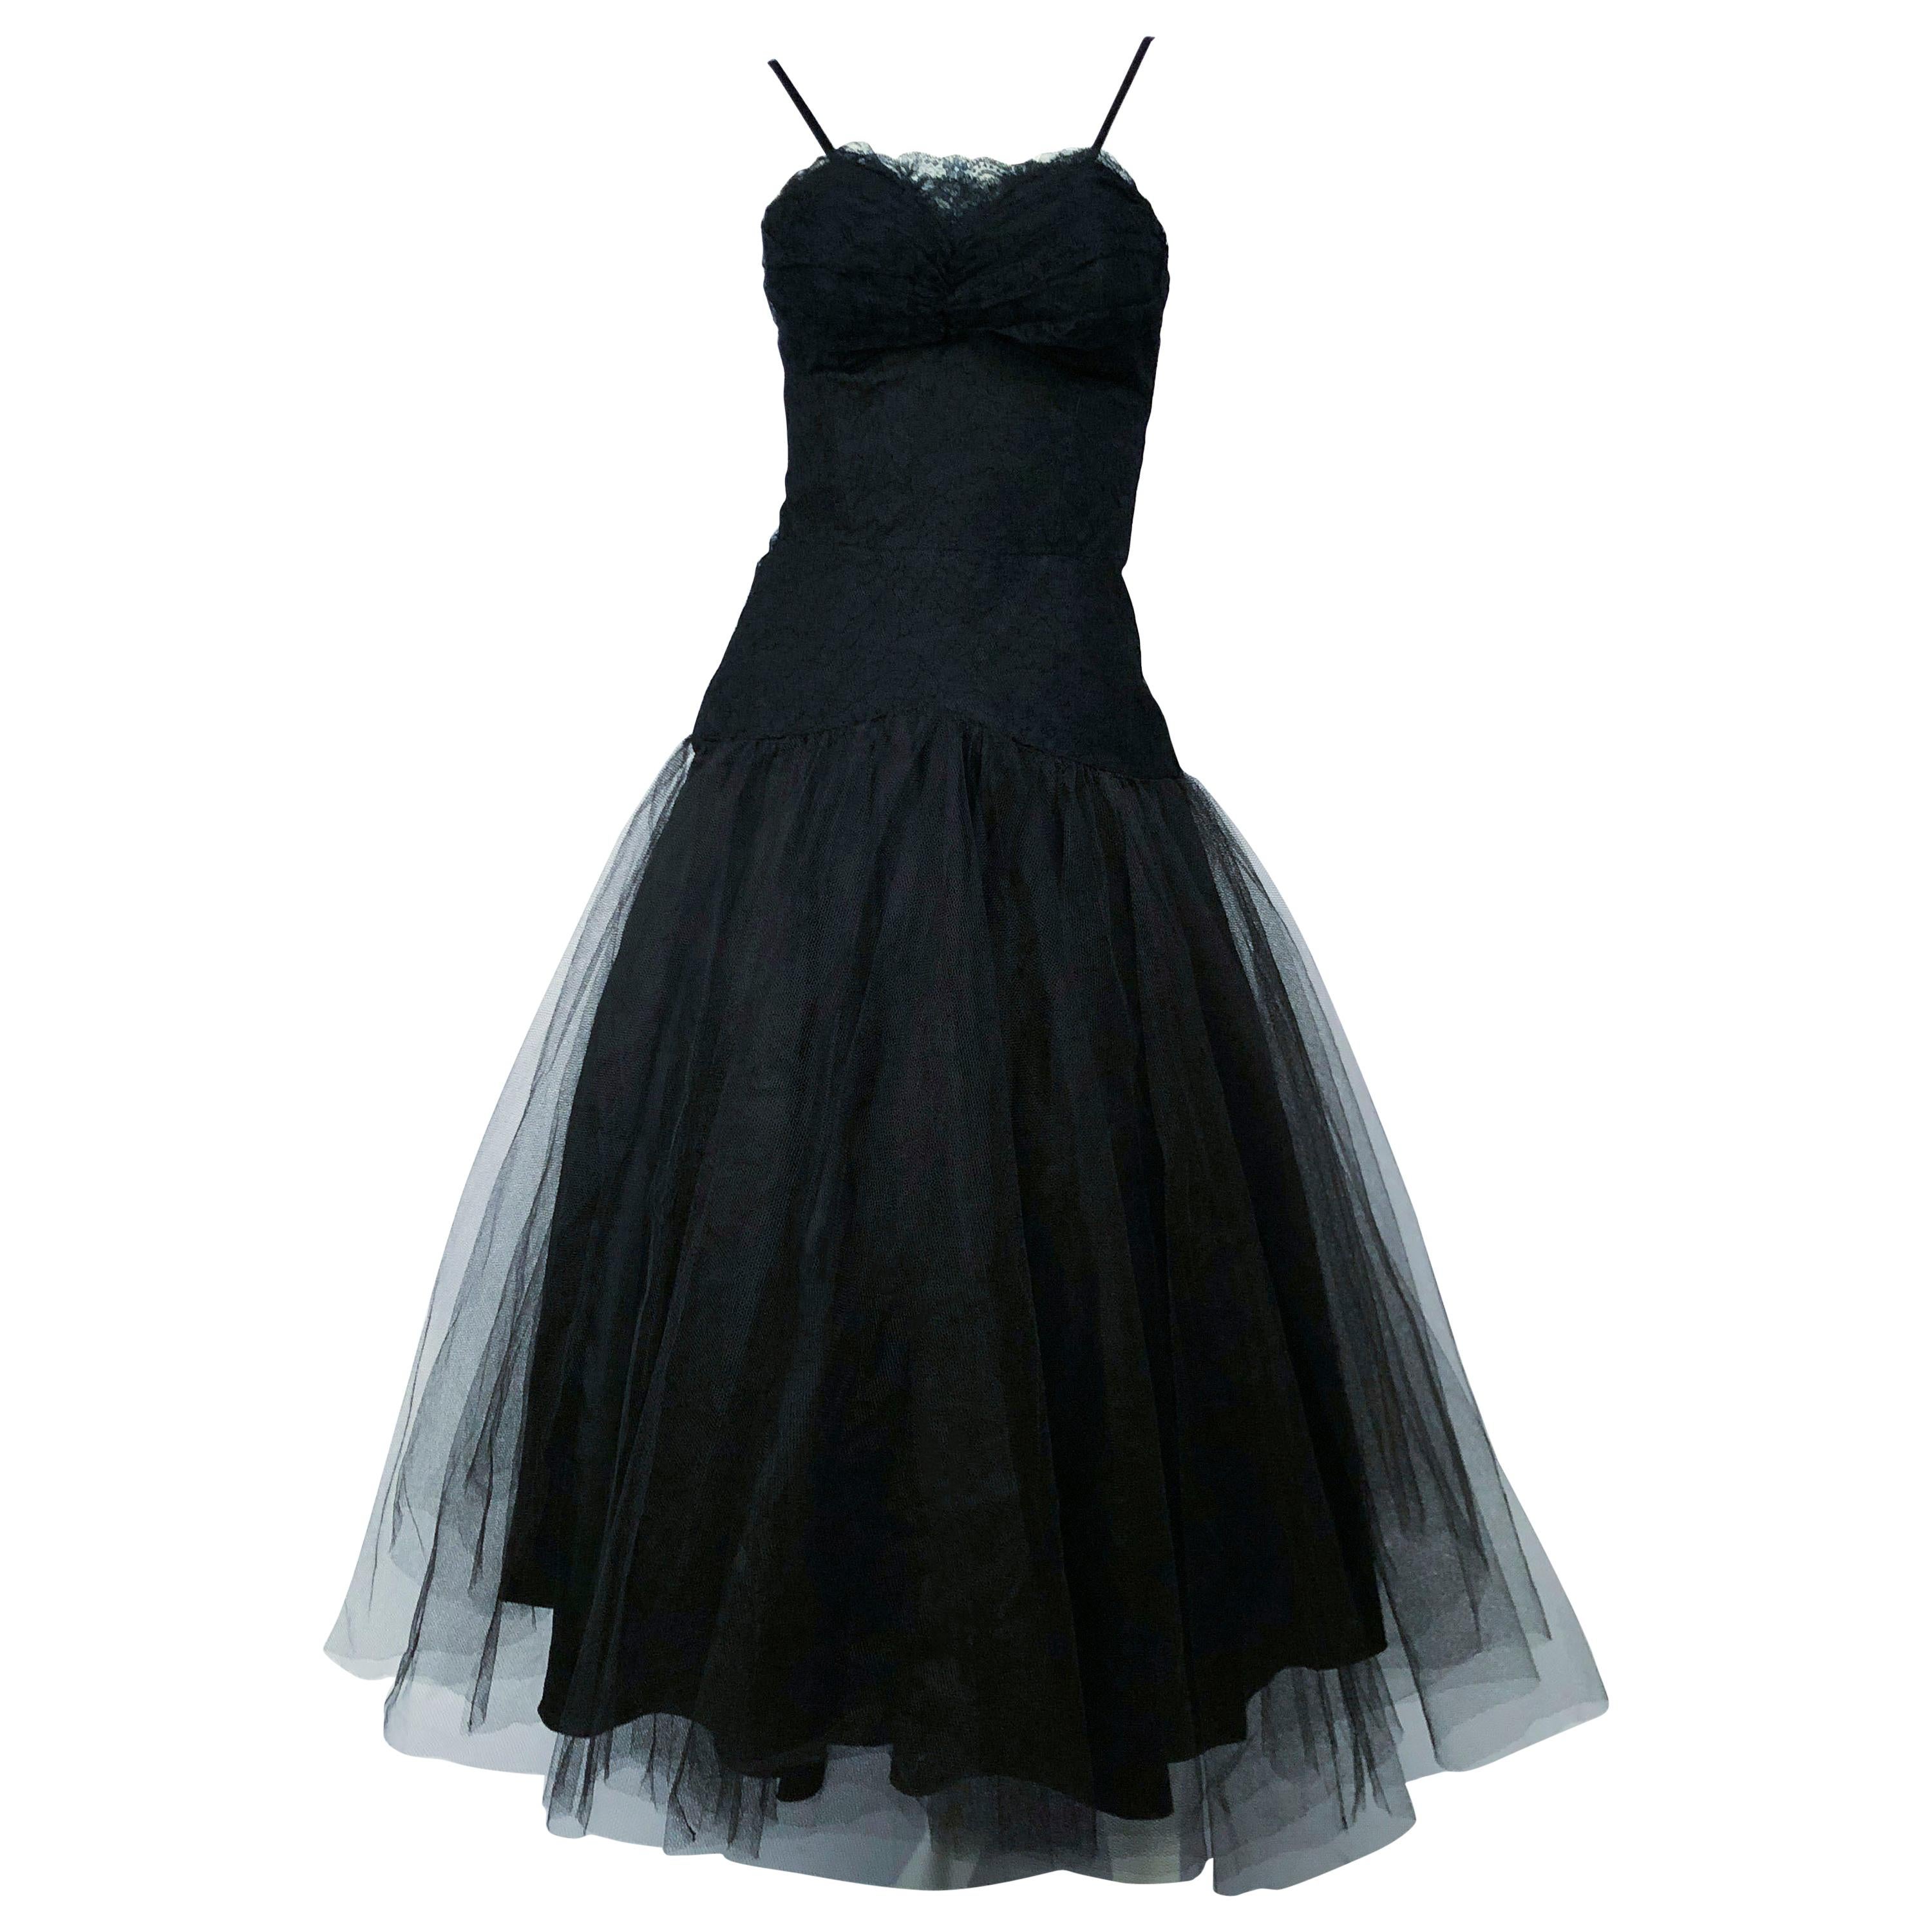 1950s Beaumelle Black Cocktail Dress